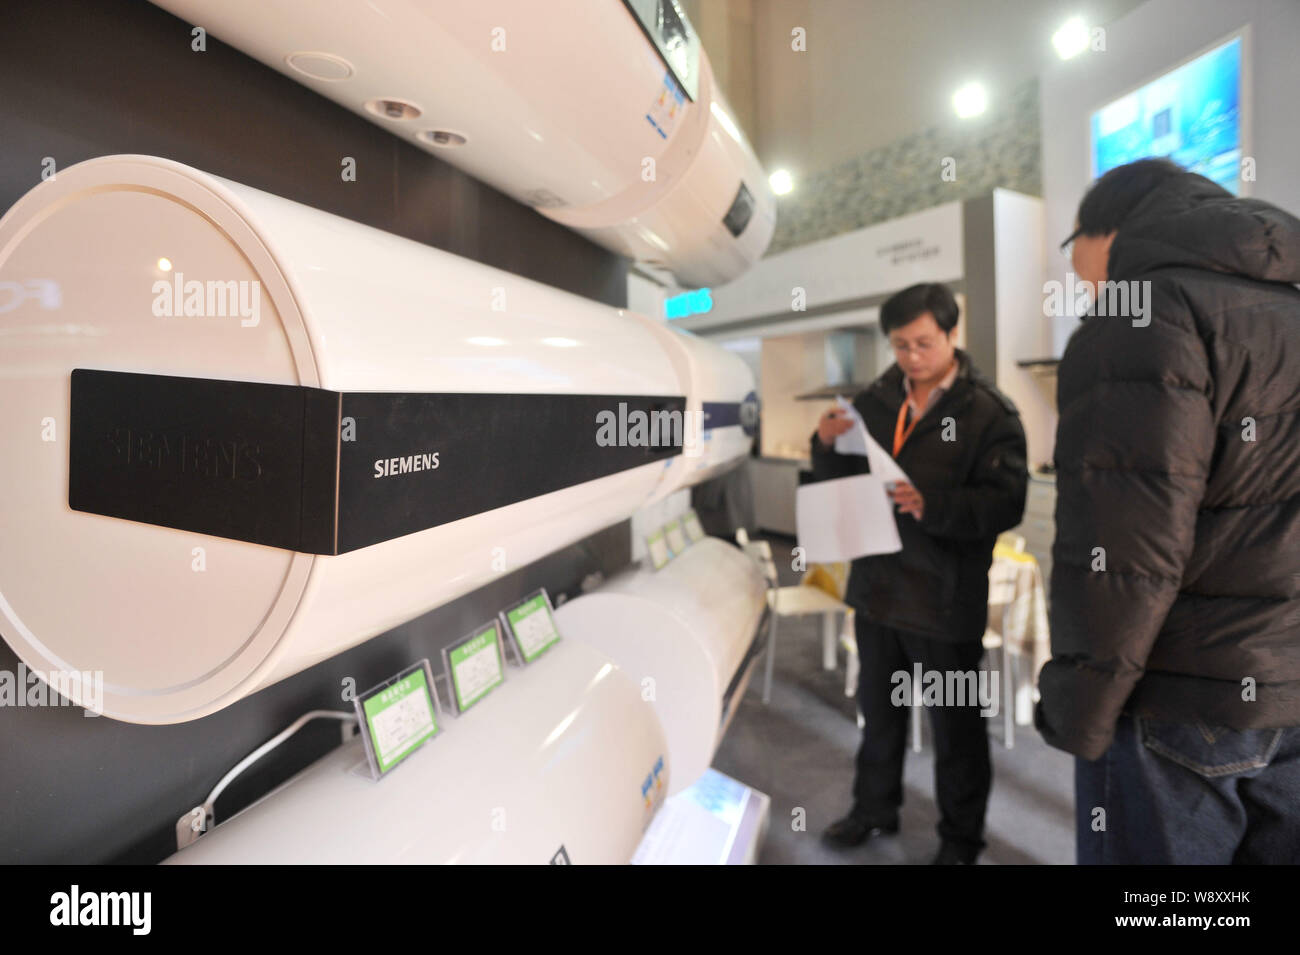 ---- Besucher Blick auf Siemens Durchlauferhitzer während einer Home Appliance Ausstellung in Peking, China, 7. März 2014. Die Siemens AG und Peking Automot Stockfoto